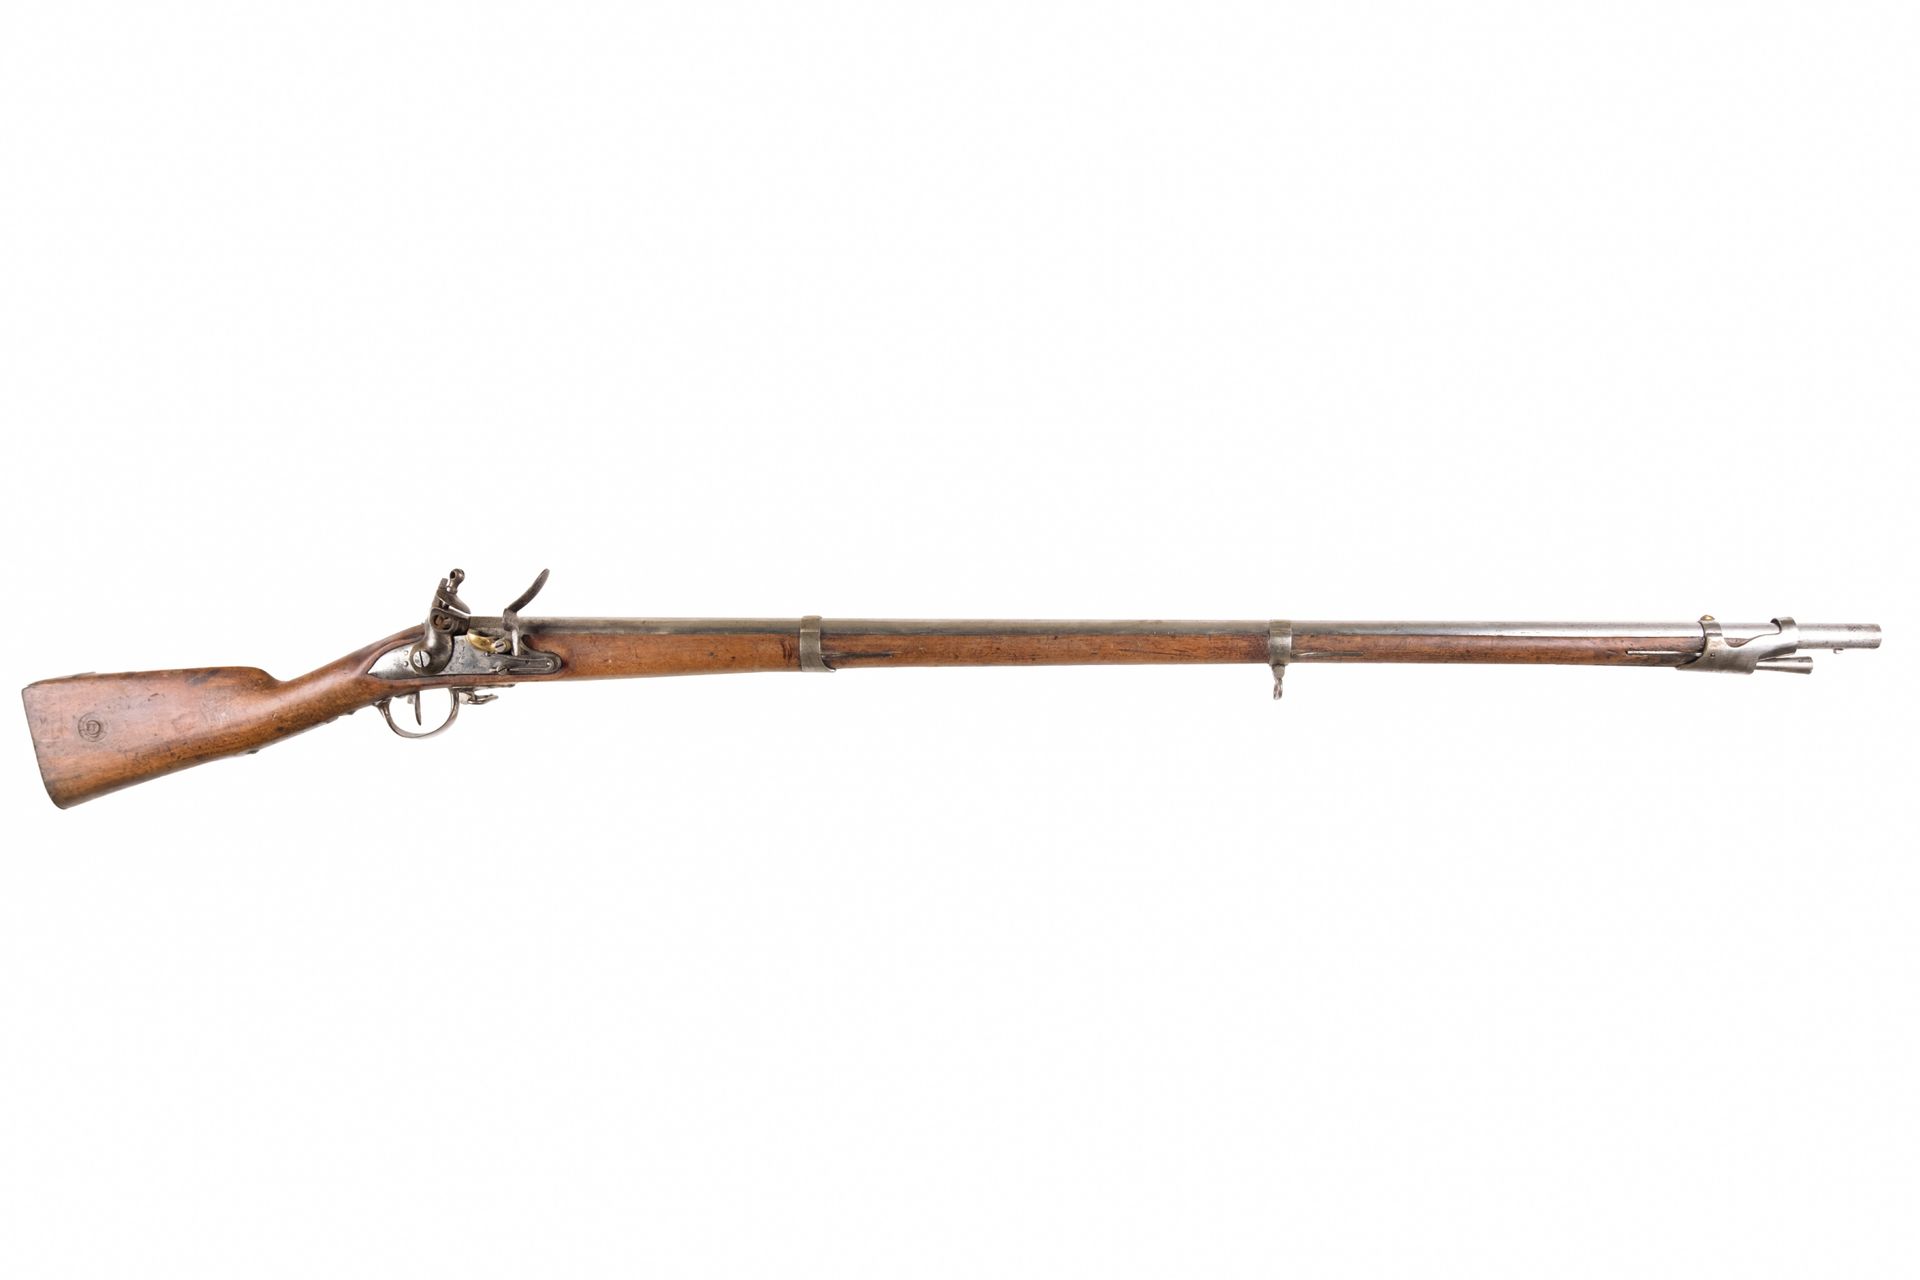 Null 燧发枪榴弹炮模型An IX.

圆形枪管，有雷鸣般的响声，盖有1811年的印章和日期。尾座

"MLE 1777"。锁上刻有 "Mre Impale &hellip;